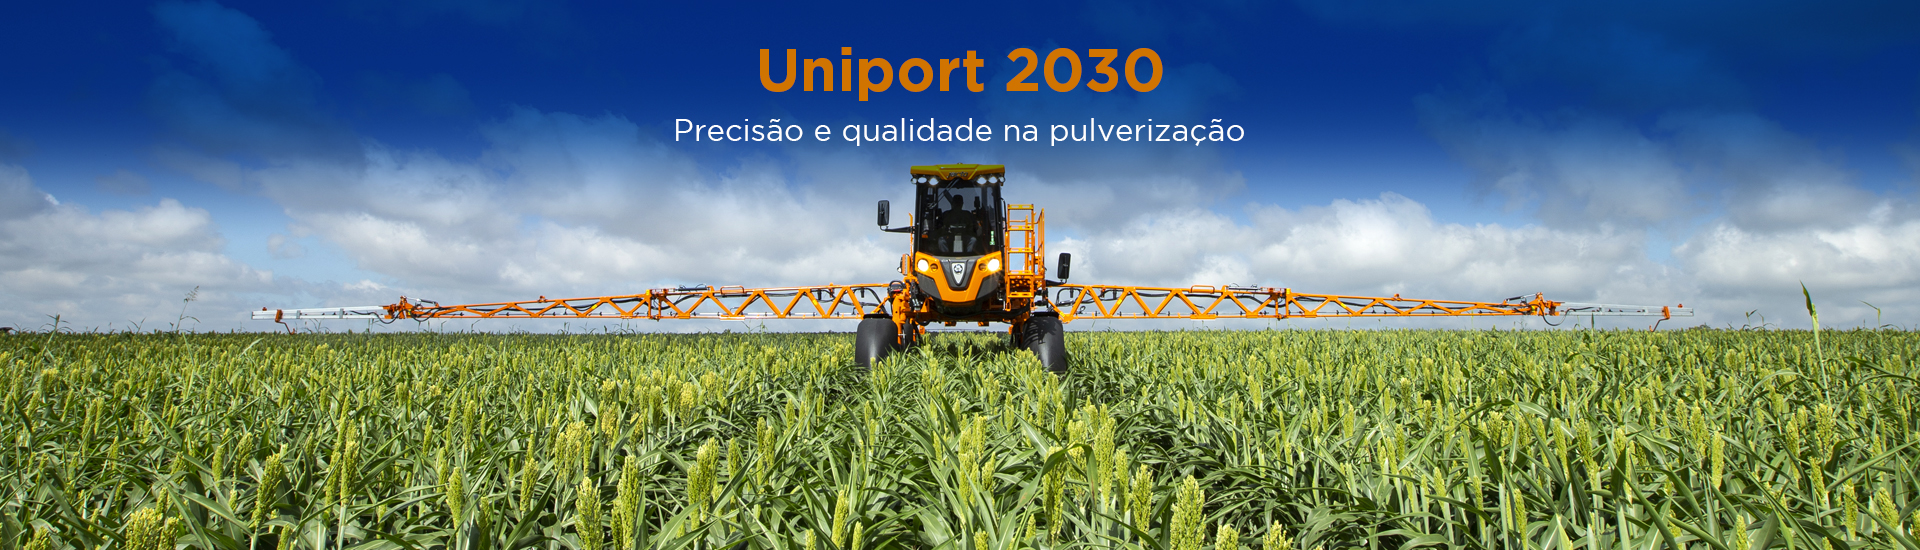 Uniport 2030